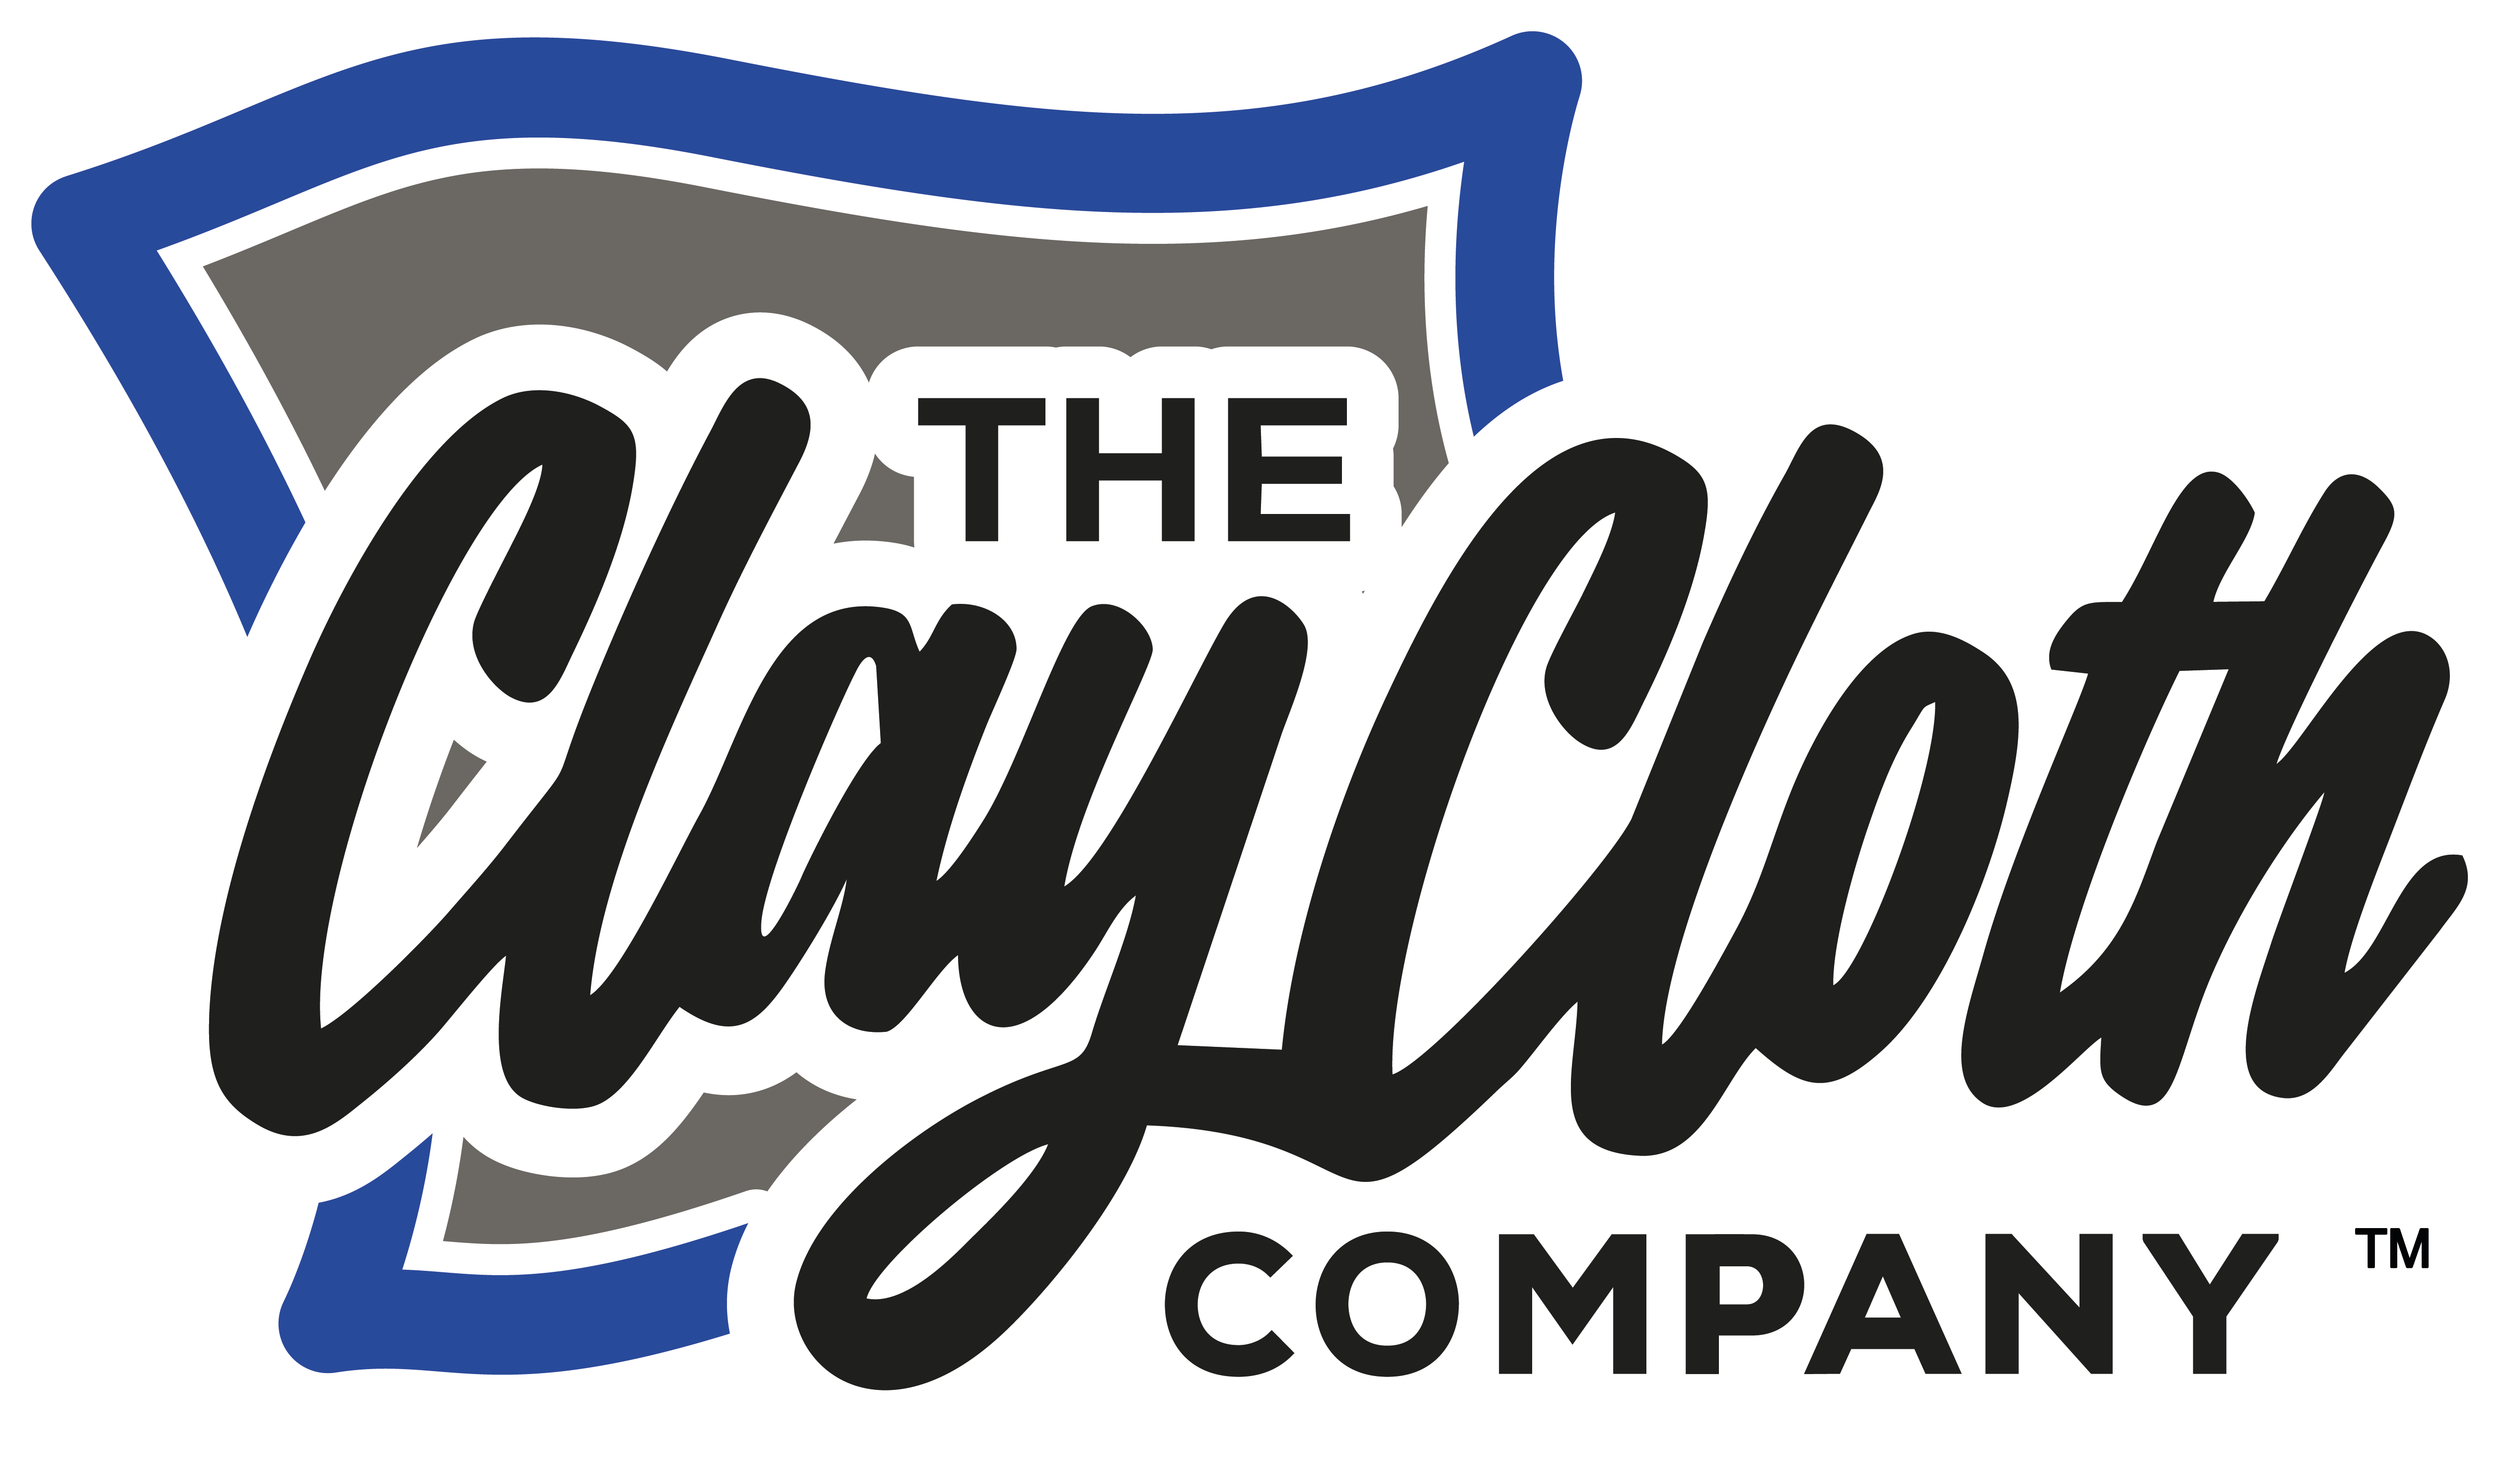 The Clay Cloth Company™